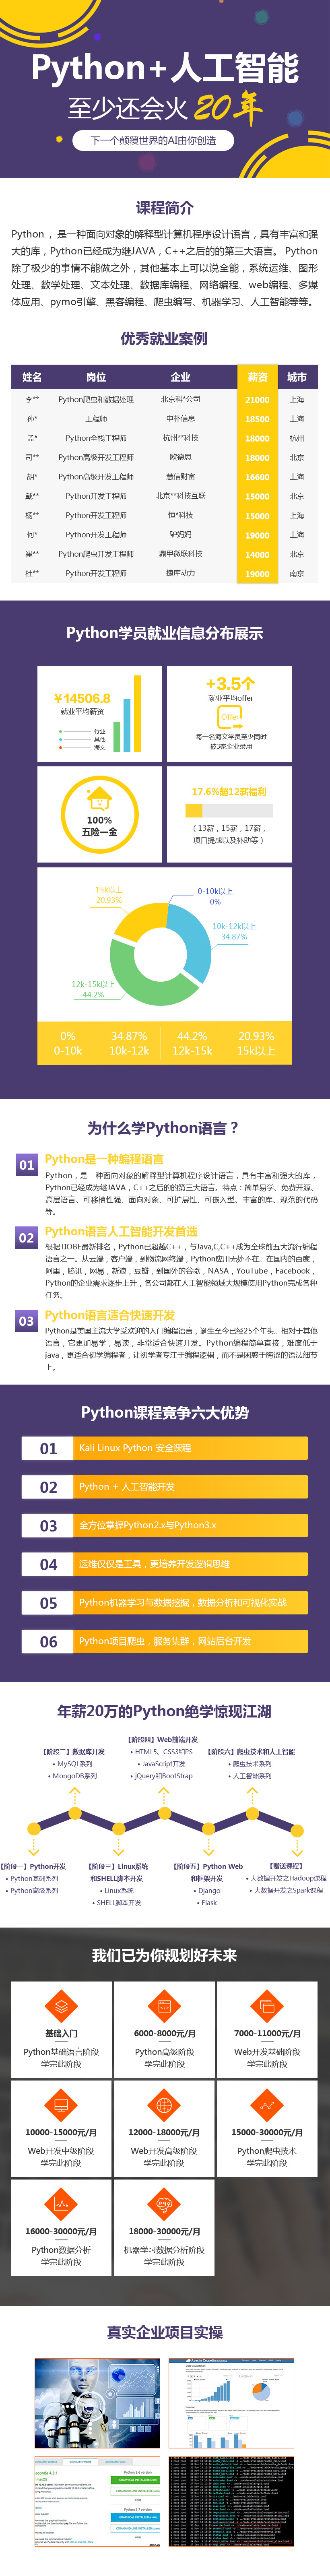 Python+人工智能热门课程-课程详情.jpg